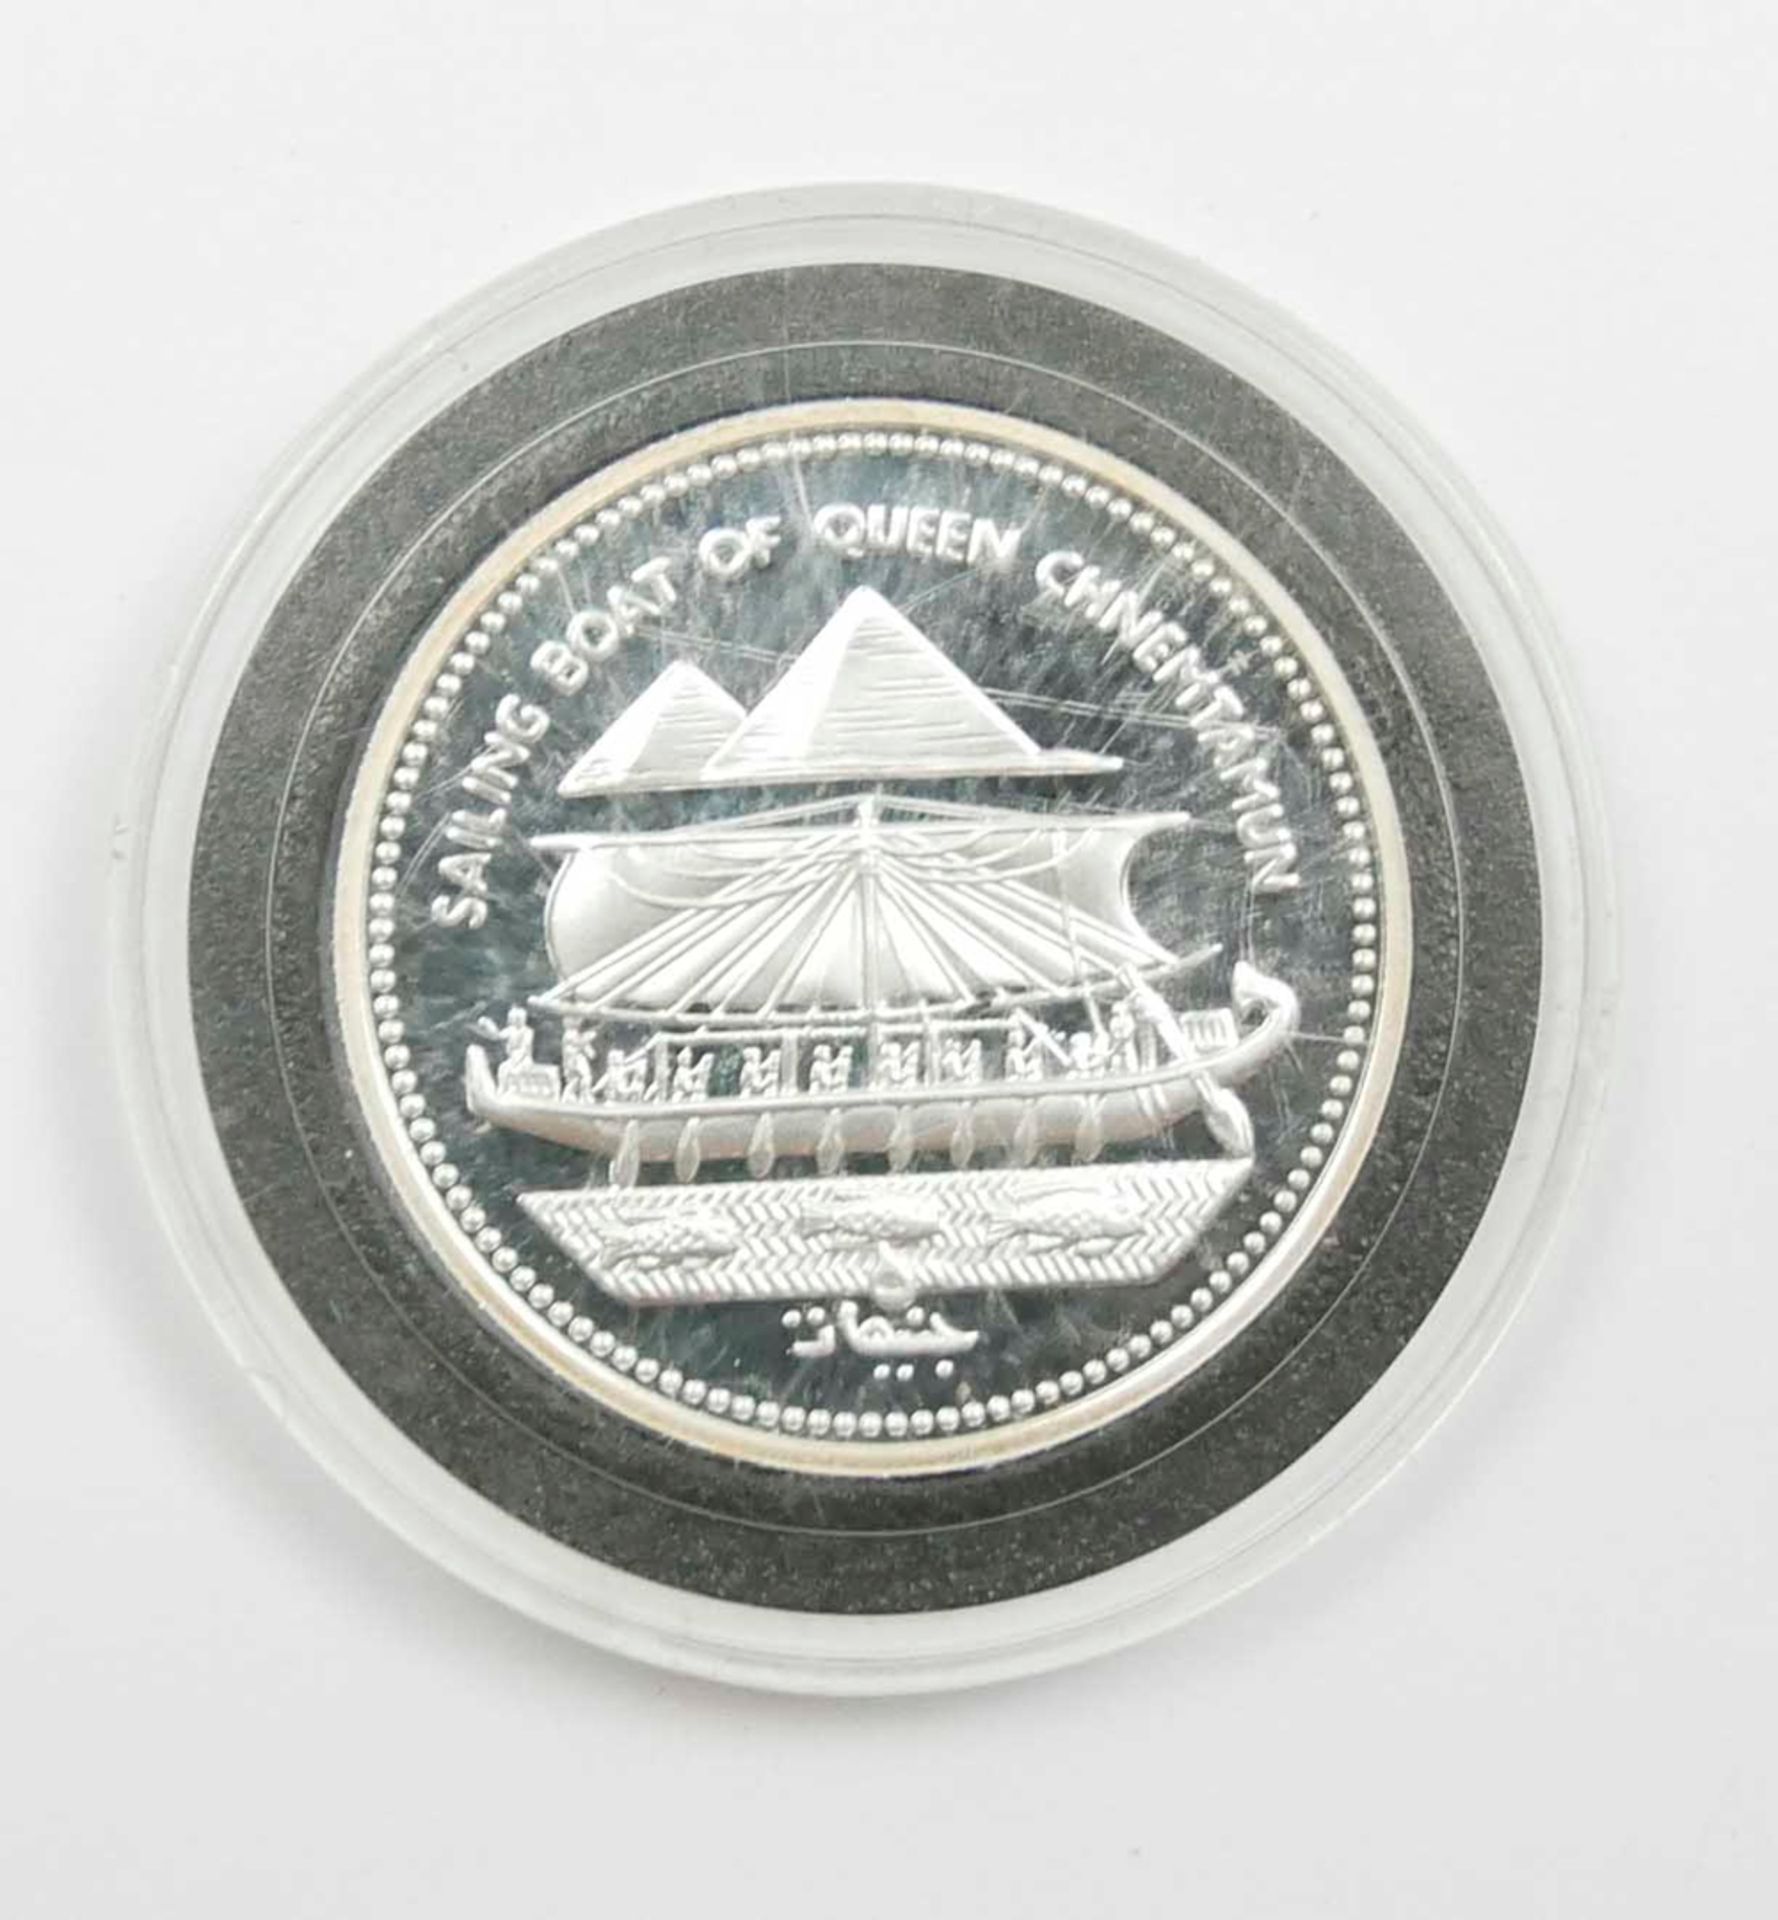 Ägypten 5 Pfund Silbermünze 1993 "Boat of Queen Chnemtamun" - Bild 2 aus 2